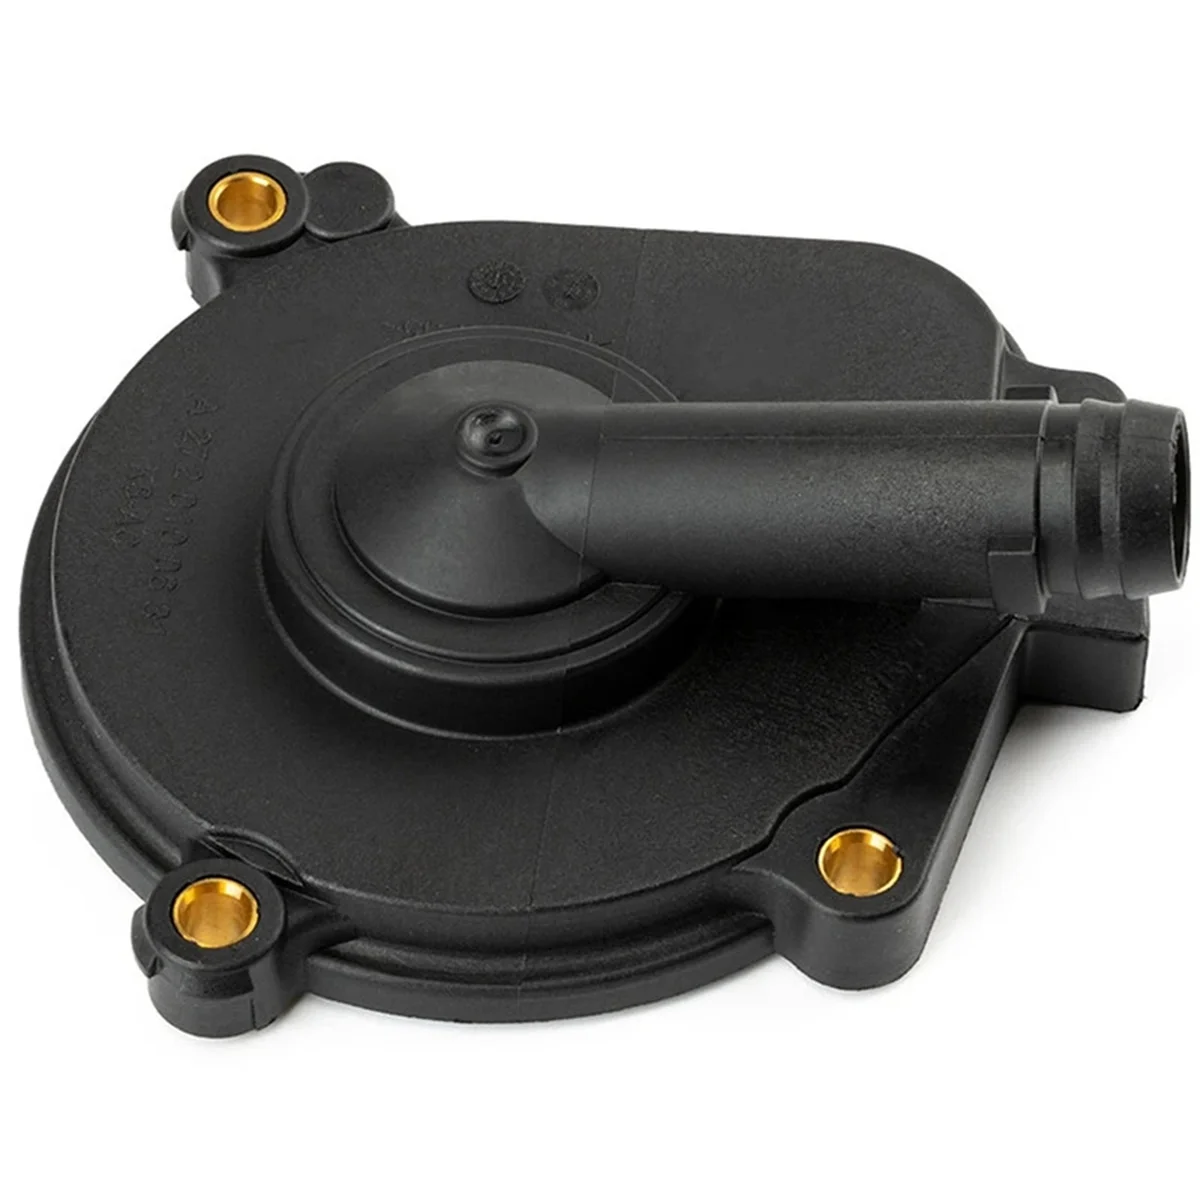 

A2720100631 клапан на вентиляционное отверстие коленчатого вала клапан на вентиляционное отверстие автомобиля для-W203 C280 W221